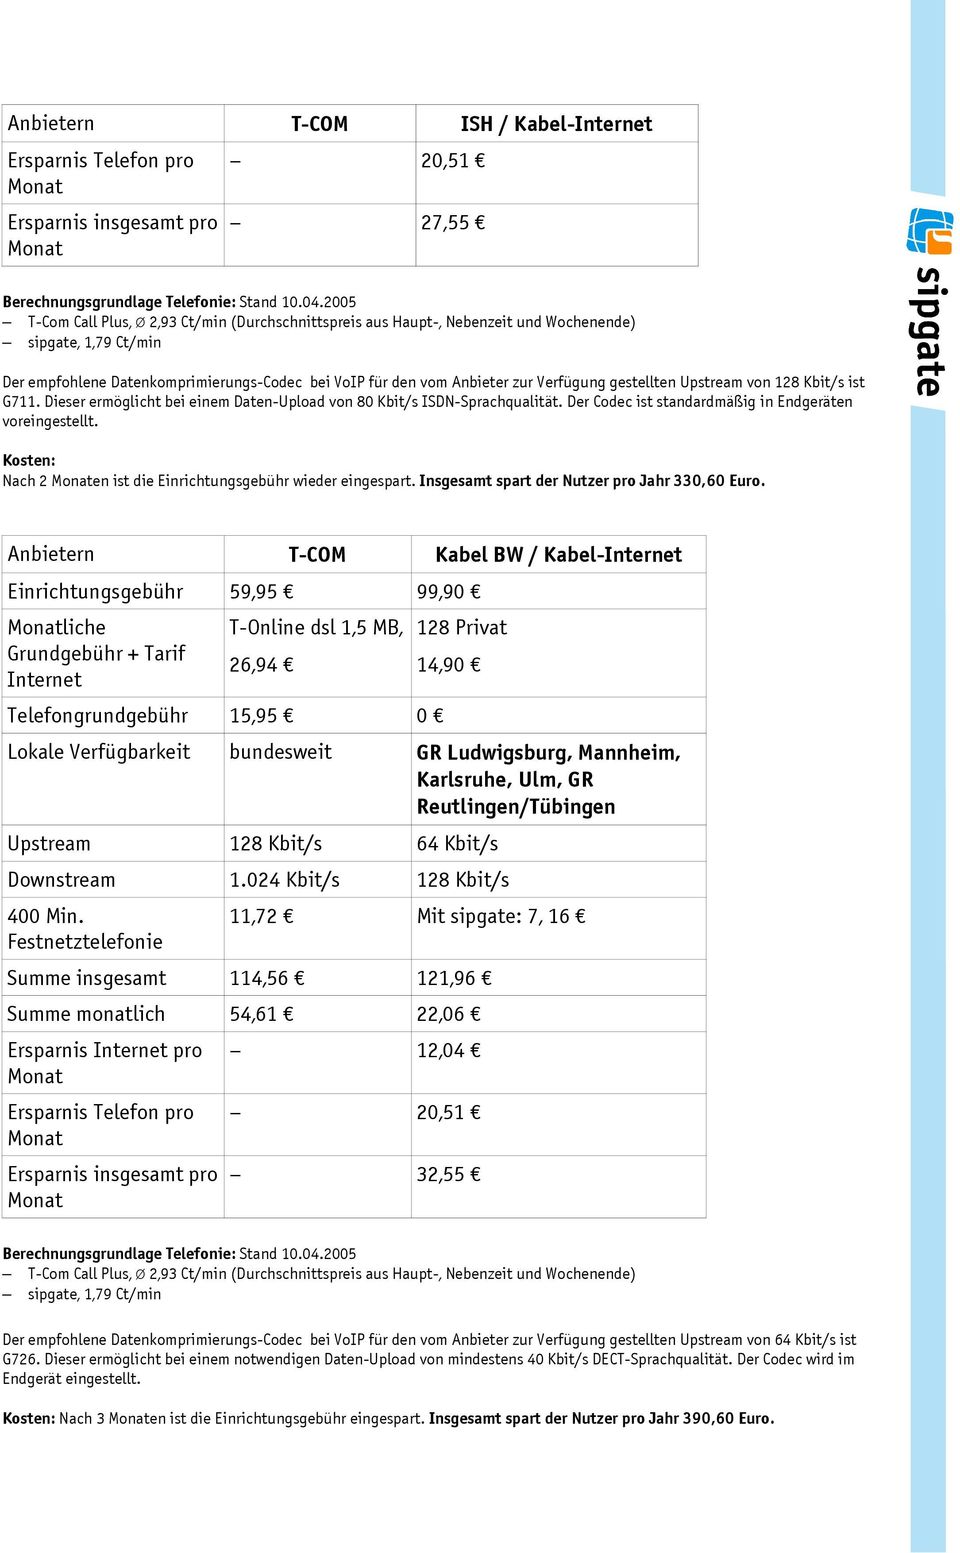 Anbietern T-COM Kabel BW / Kabel- Einrichtungsgebühr 59,95 99,90 liche 128 Privat 14,90 Lokale Verfügbarkeit bundesweit GR Ludwigsburg, Mannheim, Karlsruhe, Ulm, GR Reutlingen/Tübingen Upstream 128